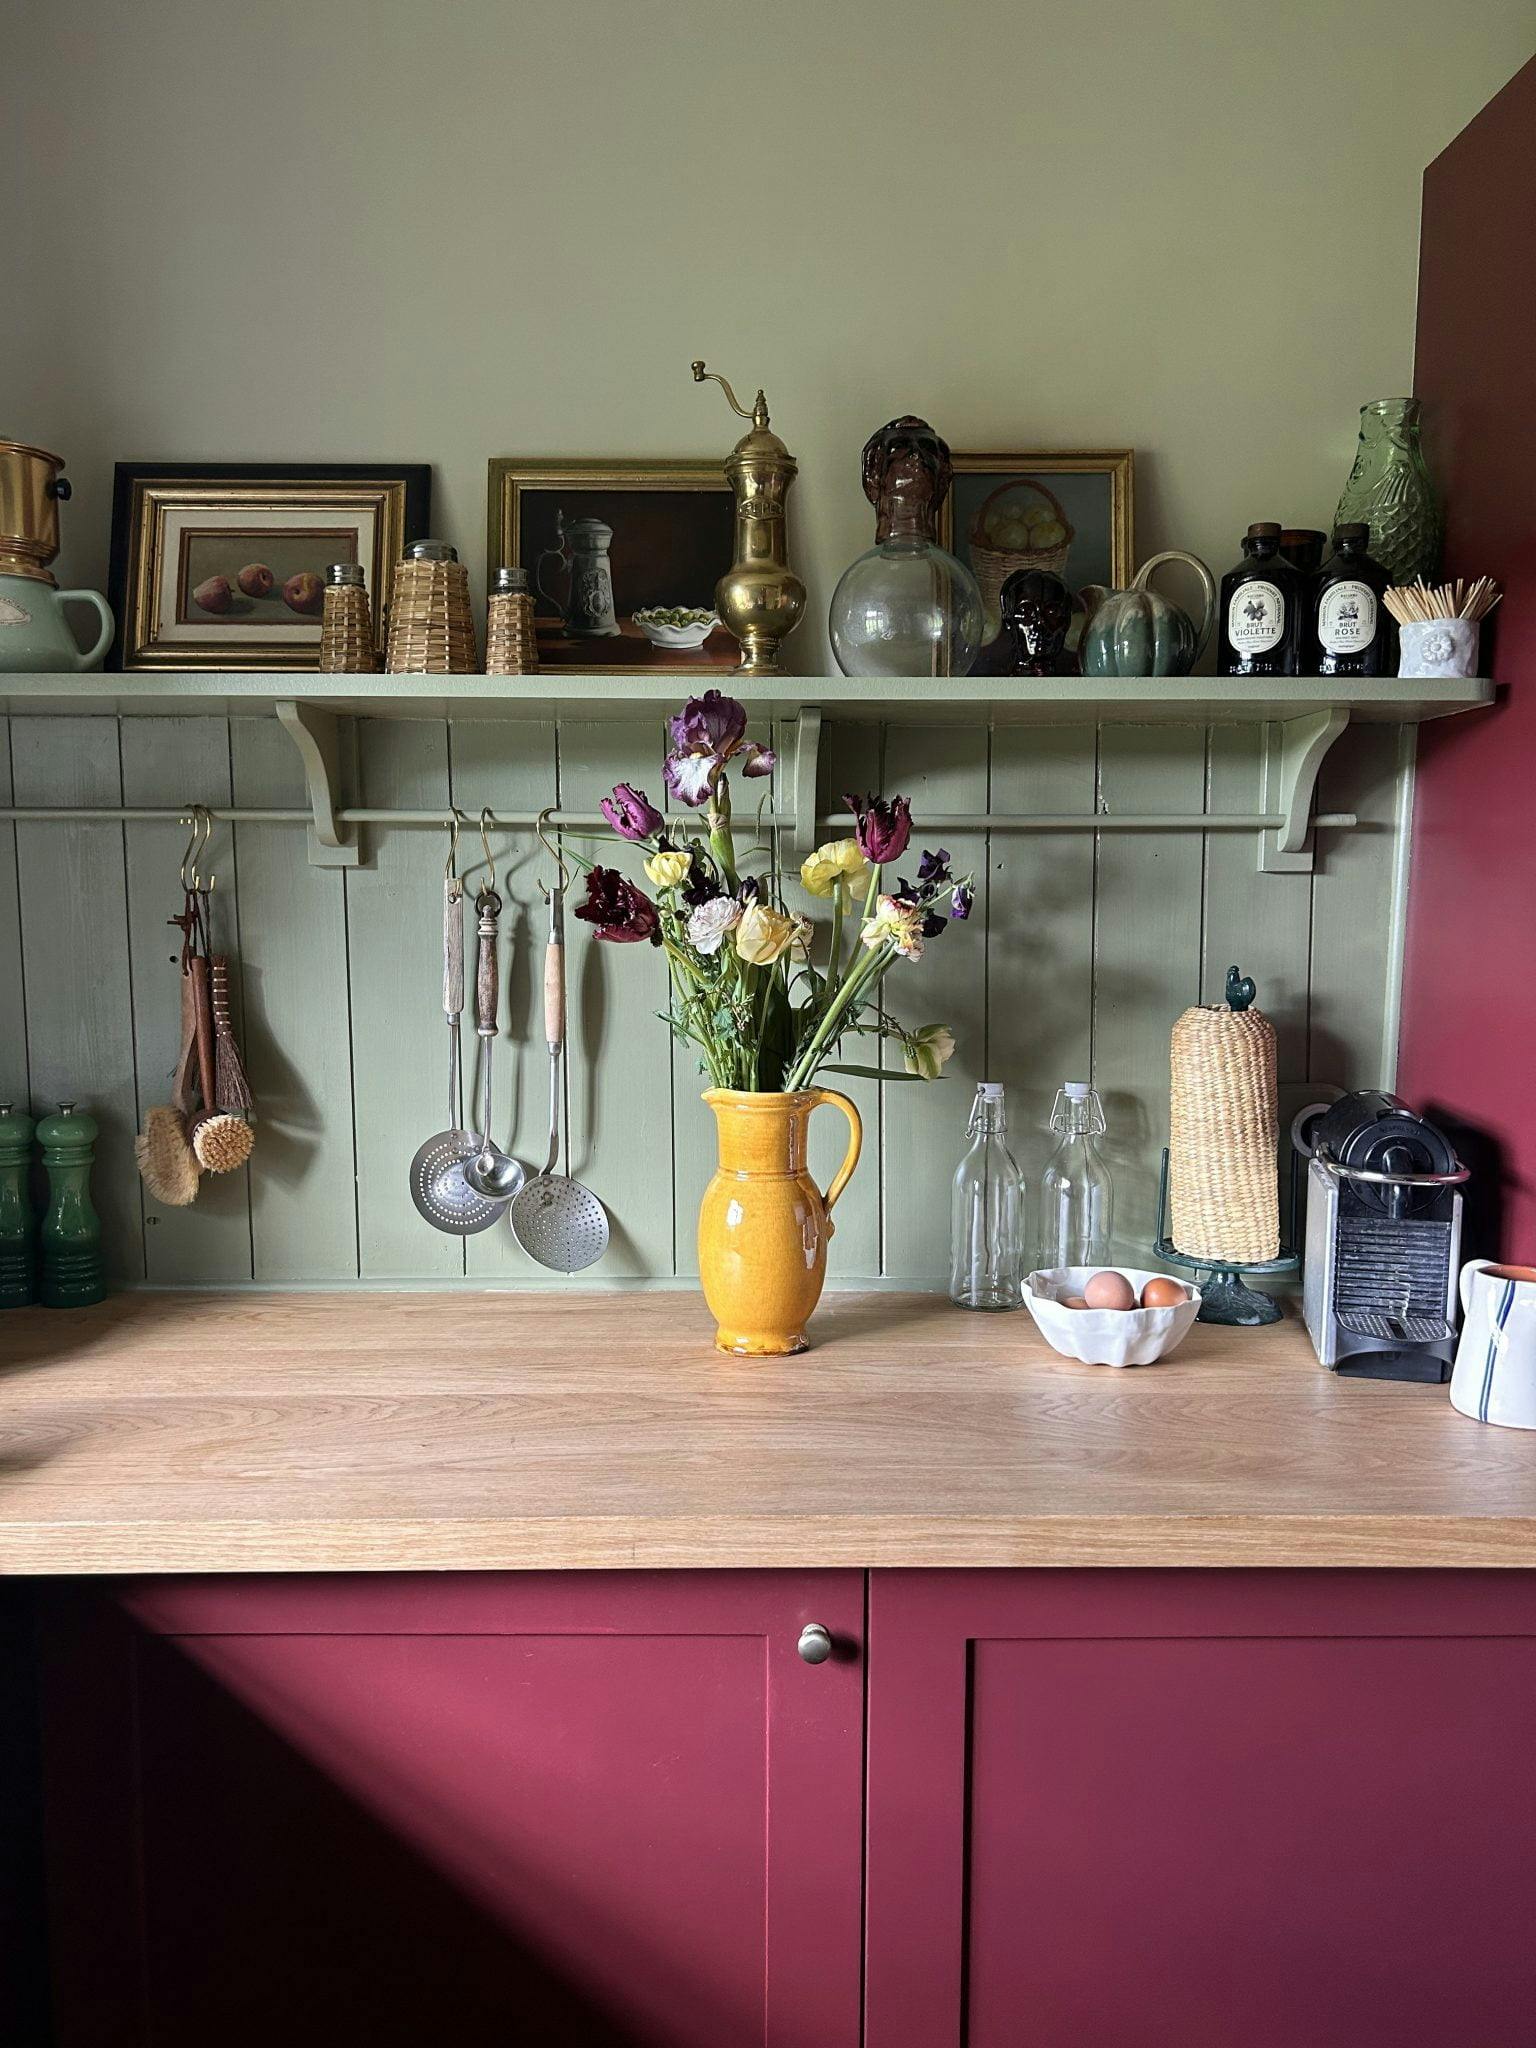 La cuisine de La Roquerie : mobilier rouge et plan de travail en bois, bouquet de fleurs